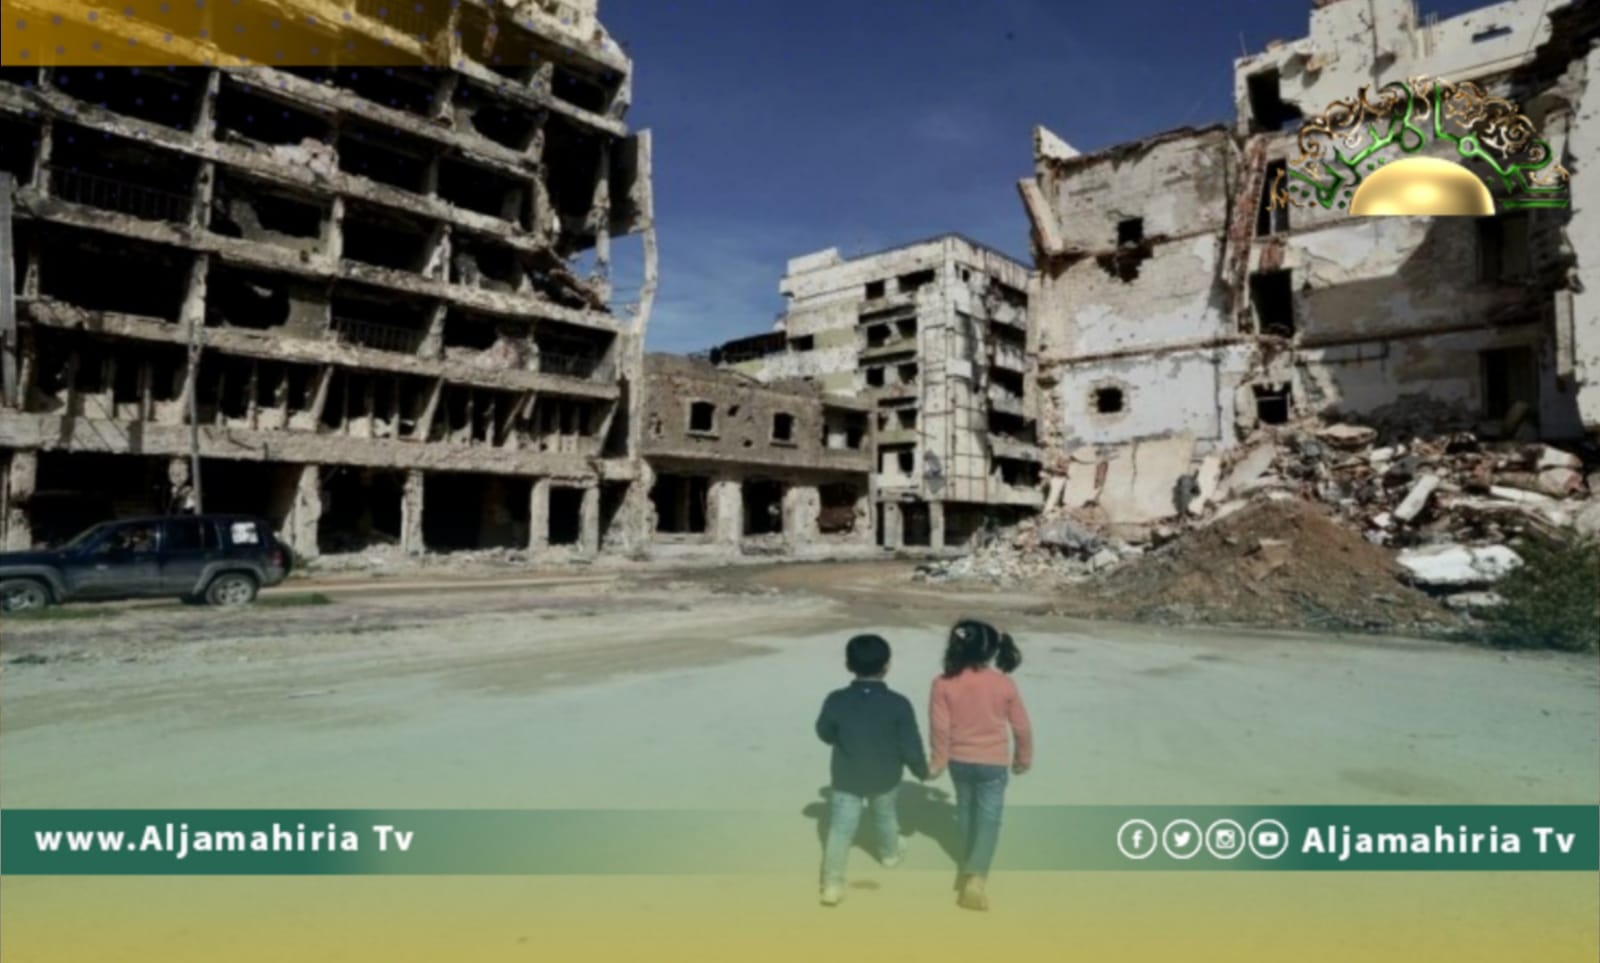 الفقر في ليبيا.. أزمة تفاقمت بعد 2011 بعد أن كانت انتهت منذ عقود